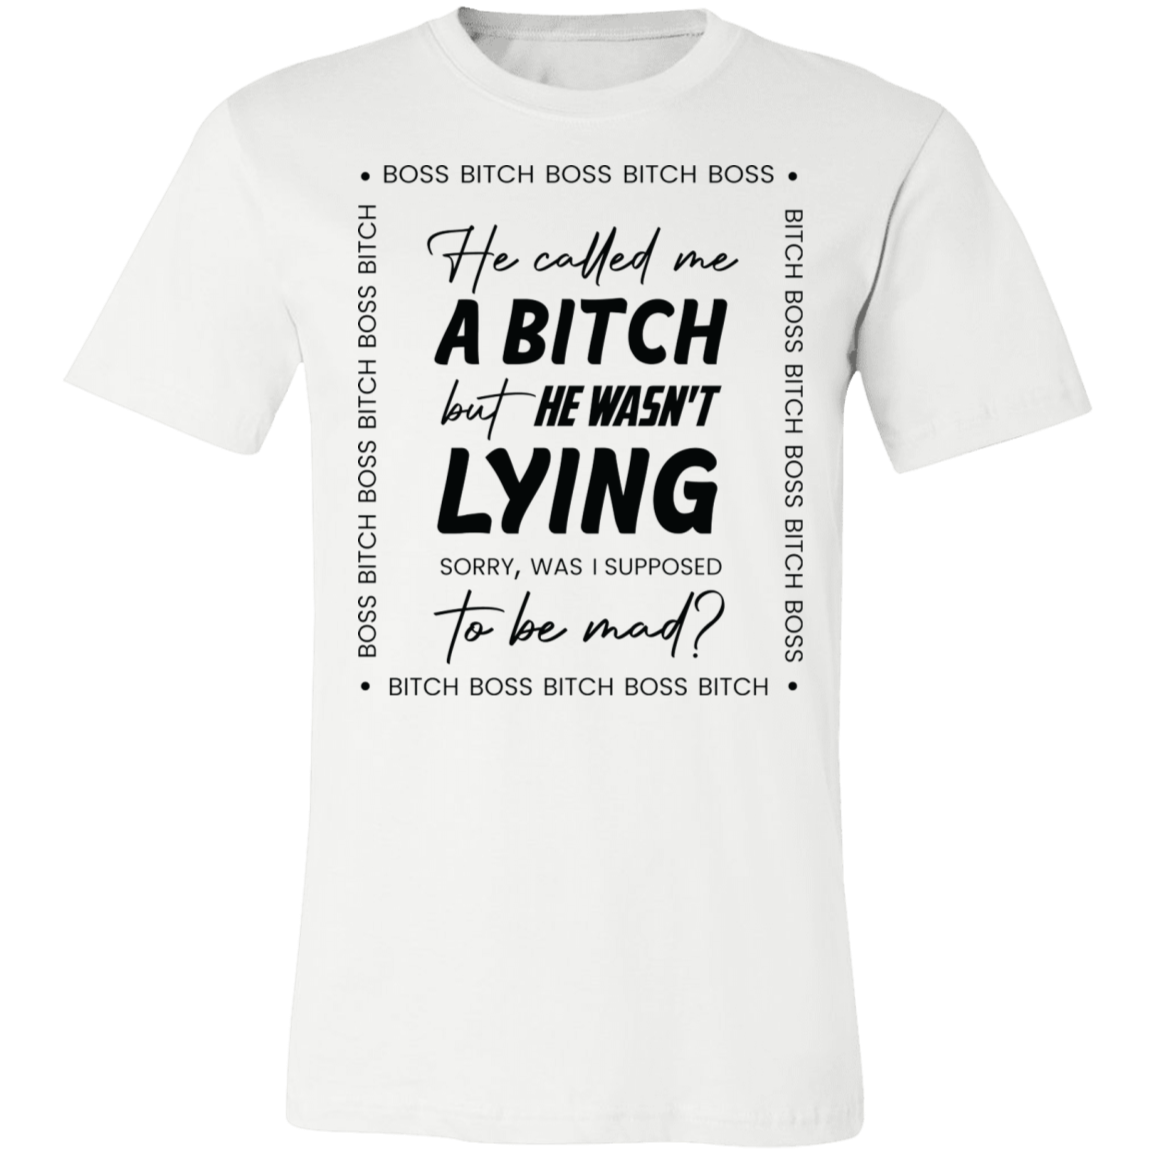 The Boss Bitch T-Shirts